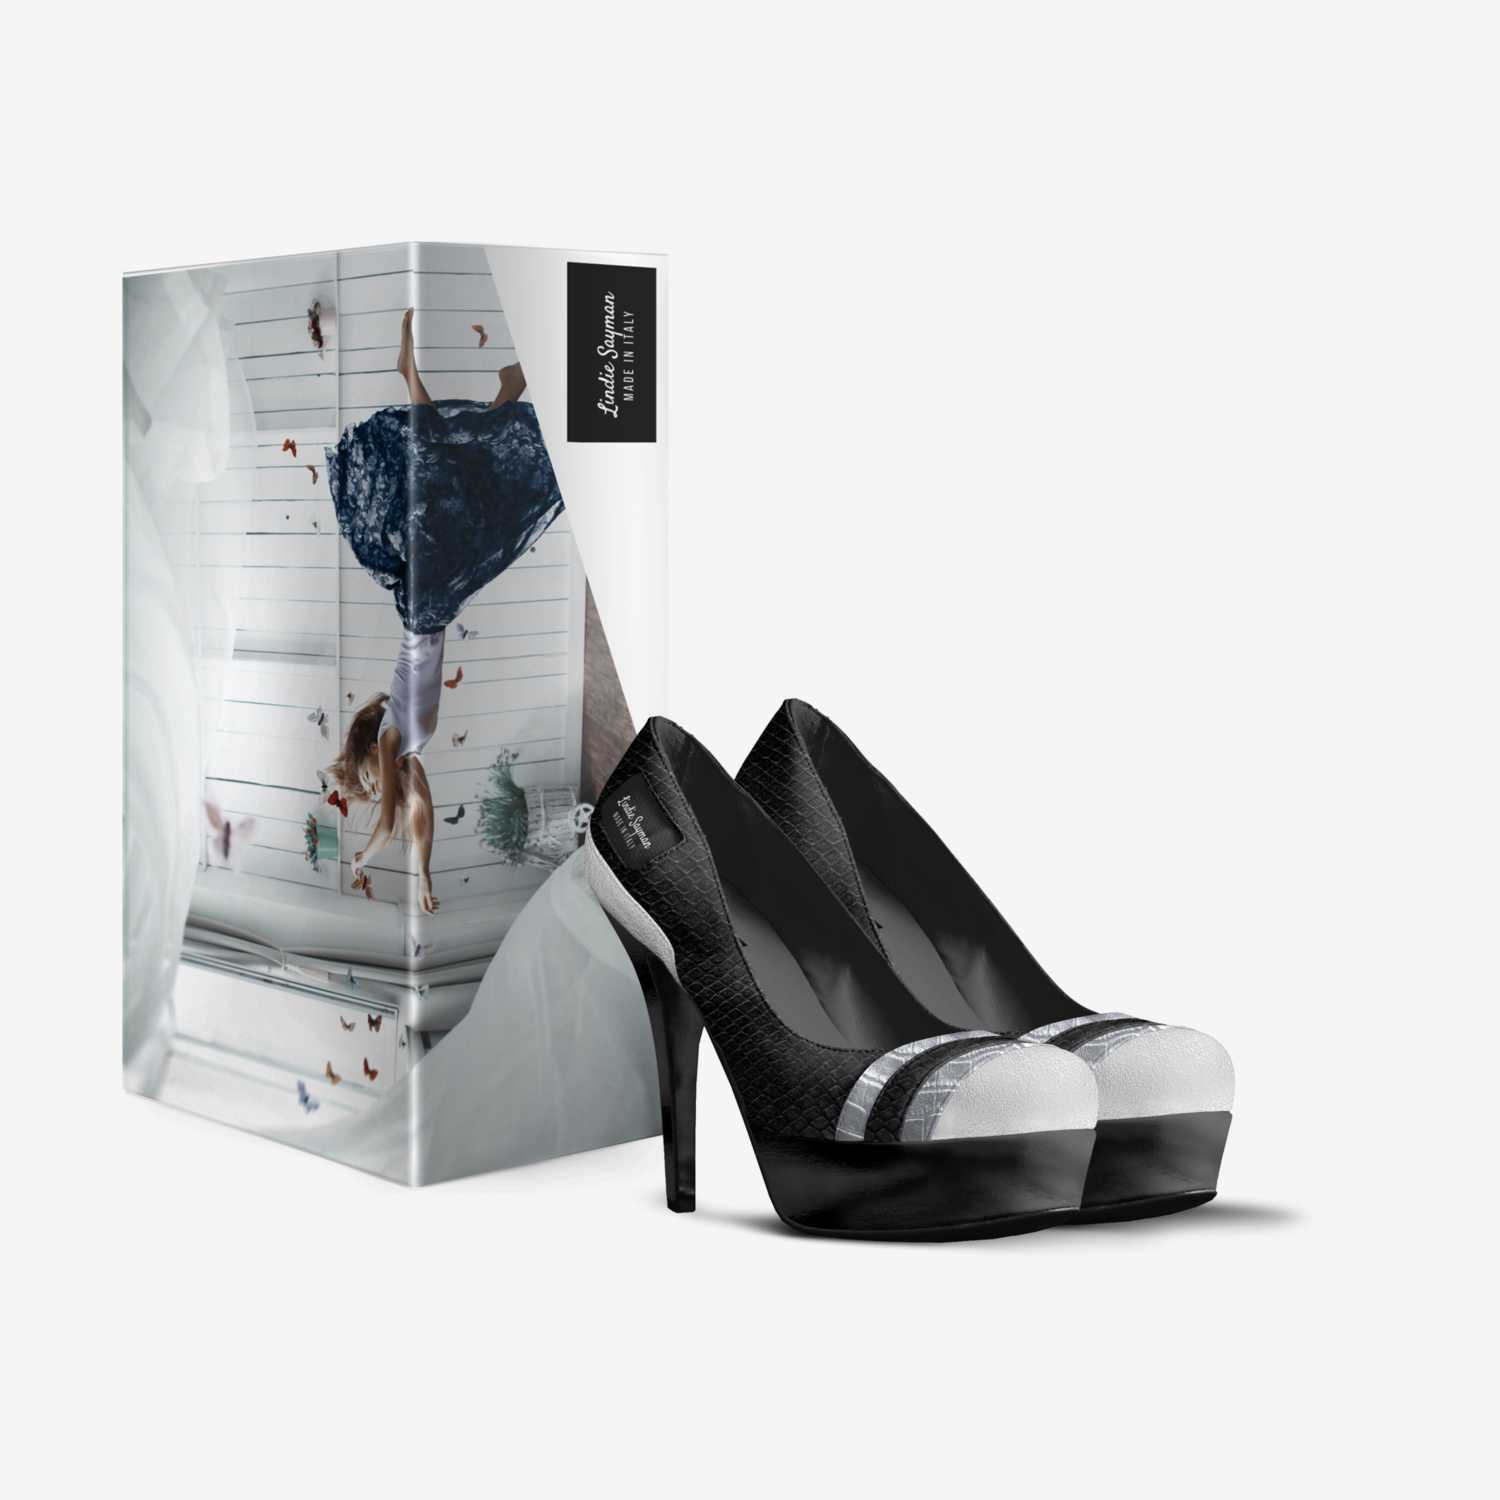 Lindie Sayman custom made in Italy shoes by Lindie Sayman | Box view